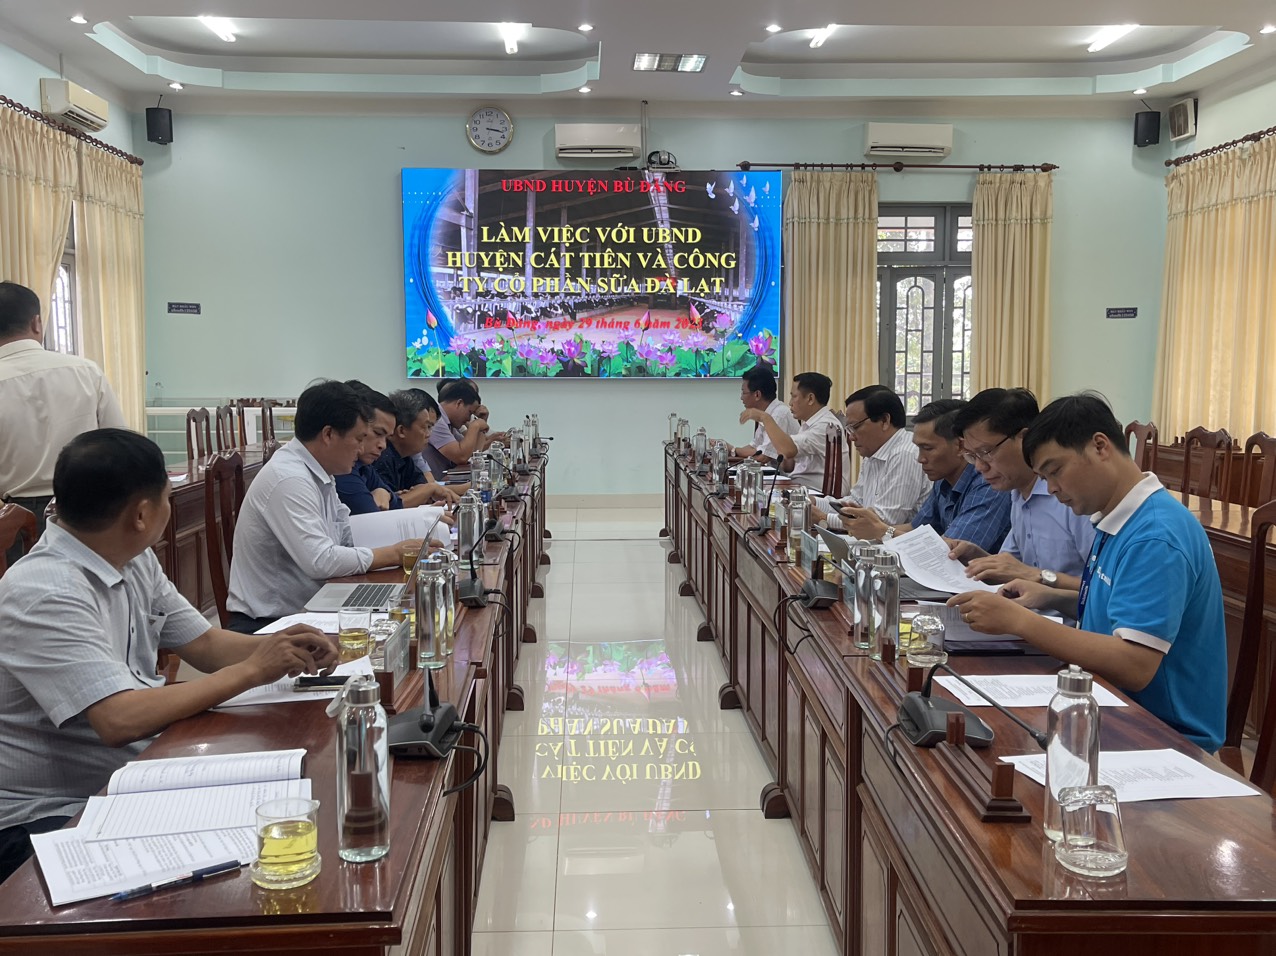 Lãnh đạo UBND huyện Bù Đăng làm việc với UBND huyện Cát Tiên và Công ty cổ phần sữa Đà Lạt